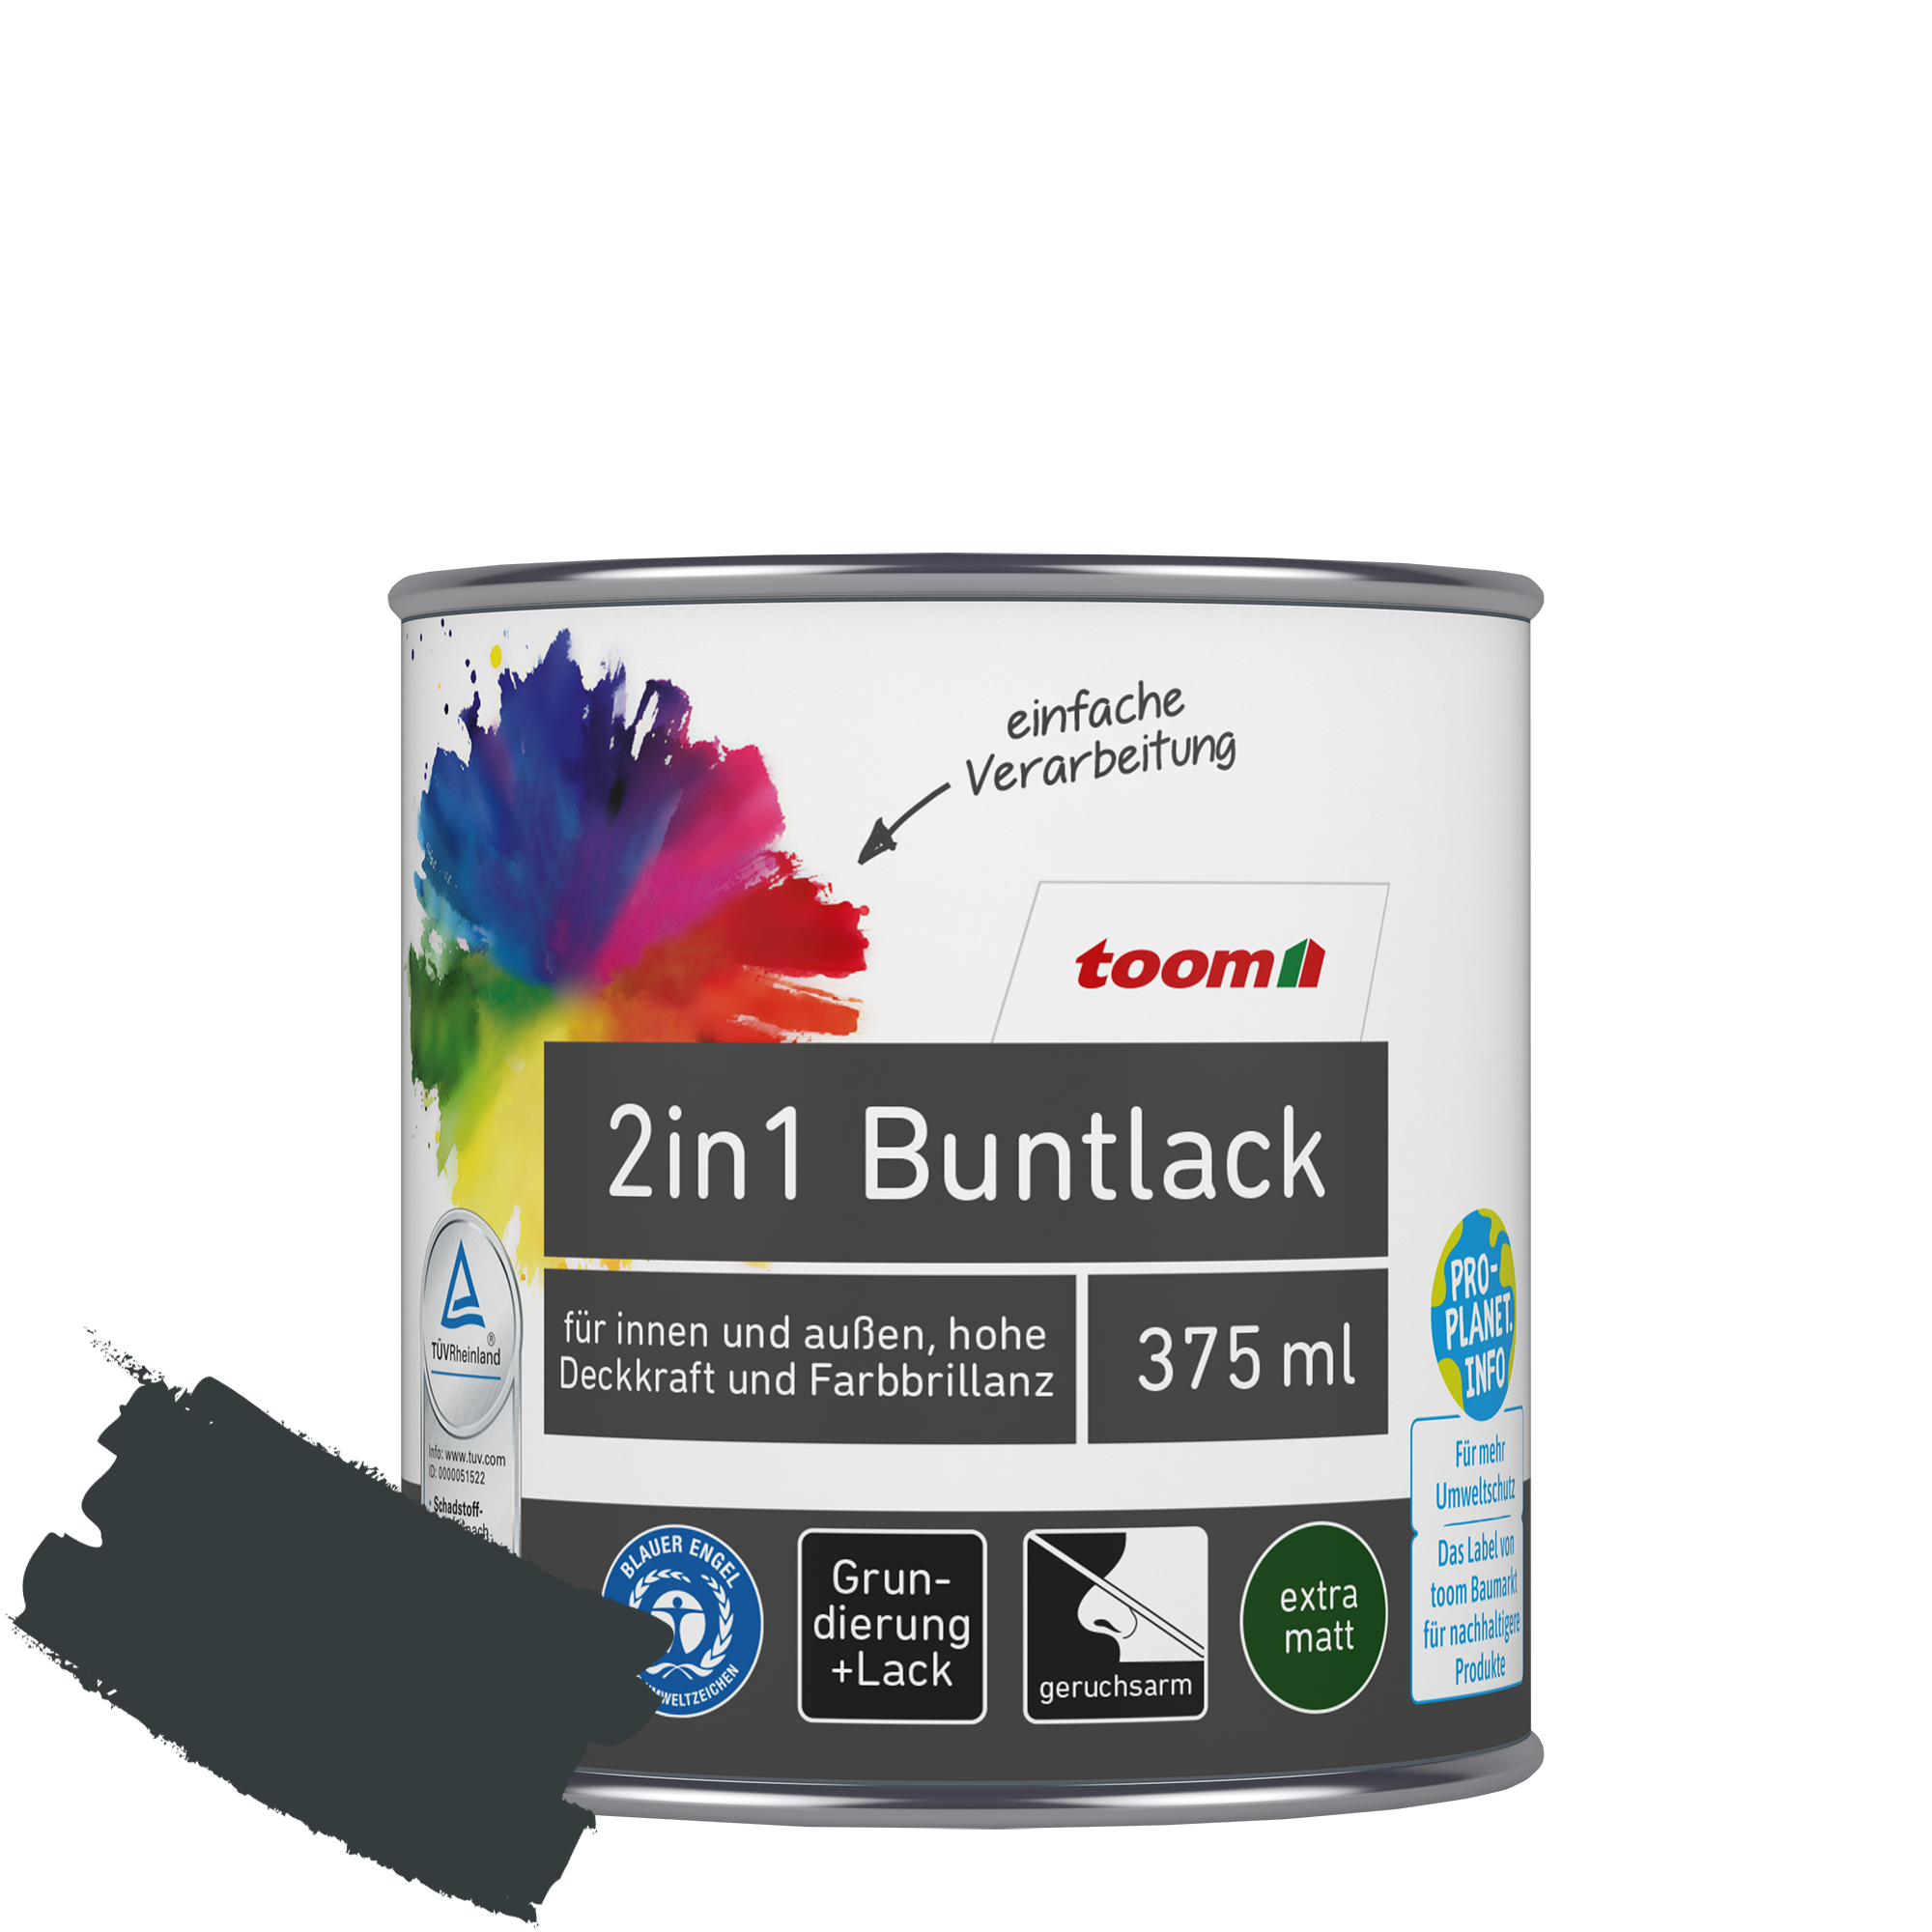 2in1 Buntlack 'Schattenspiel' anthrazitfarben matt 375 ml + product picture